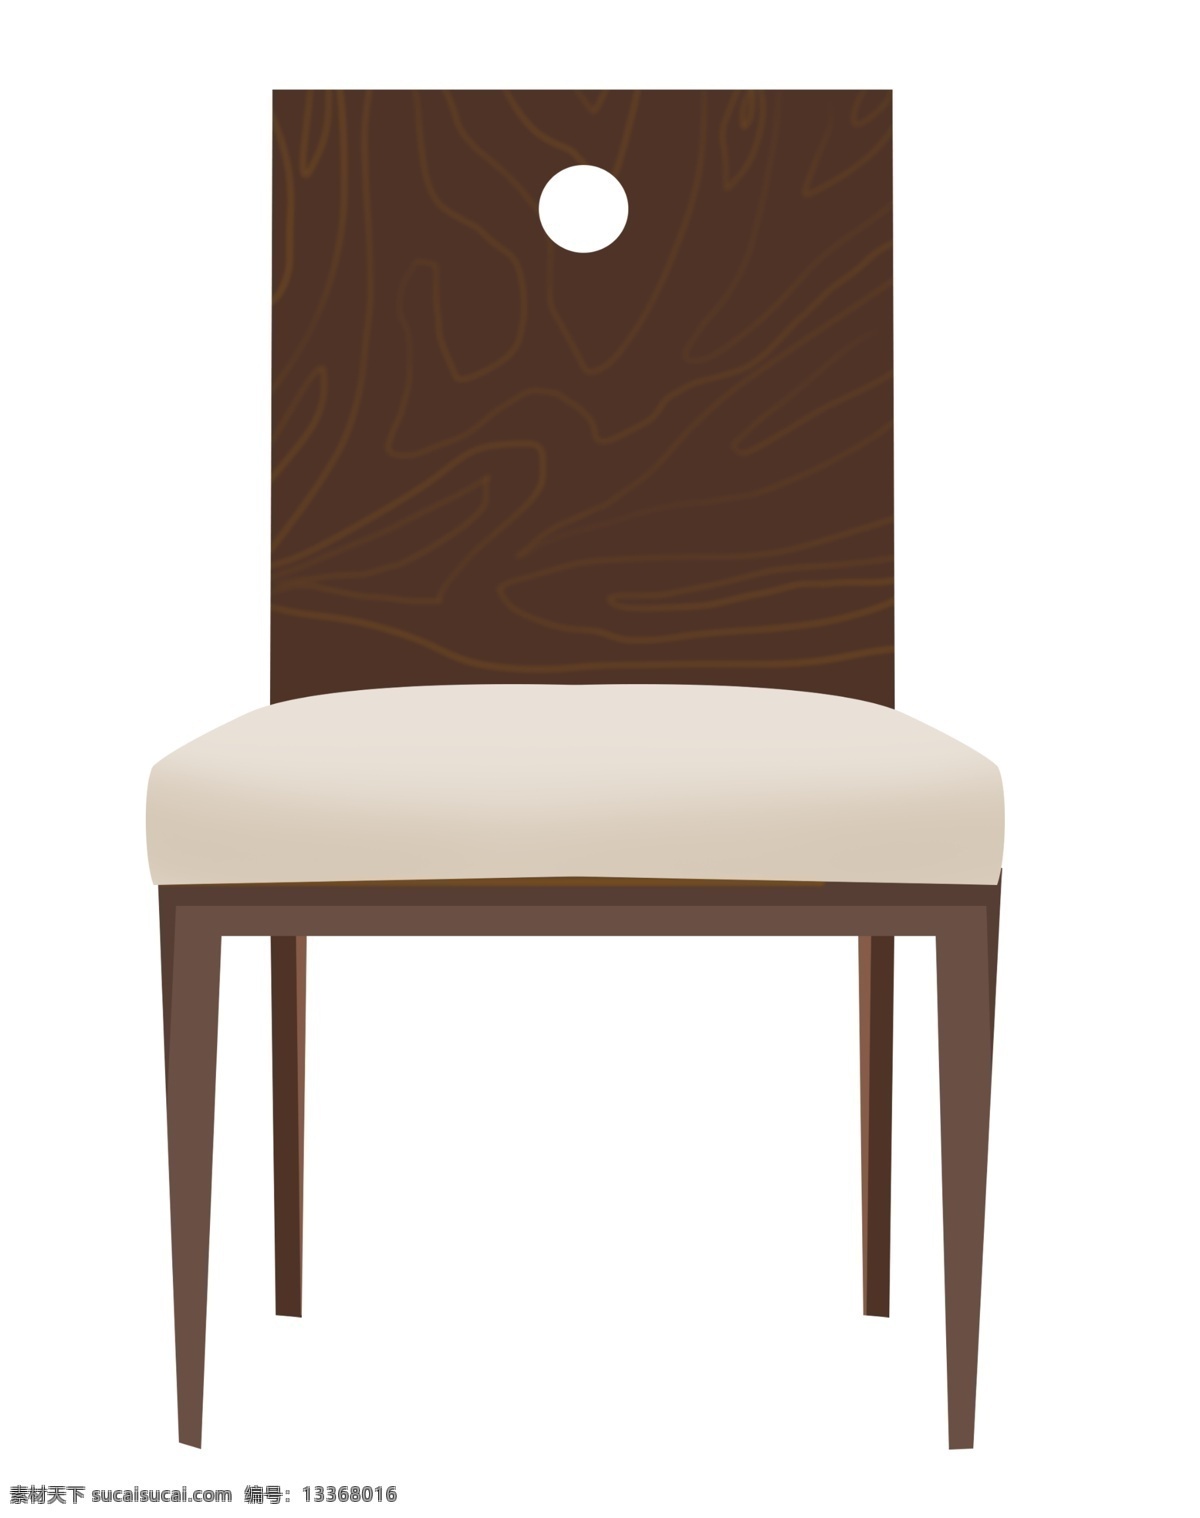 一把 木质 椅子 插画 木质椅子 木椅子 木头 实木椅子 一把椅子 原木色椅子 木质椅子插图